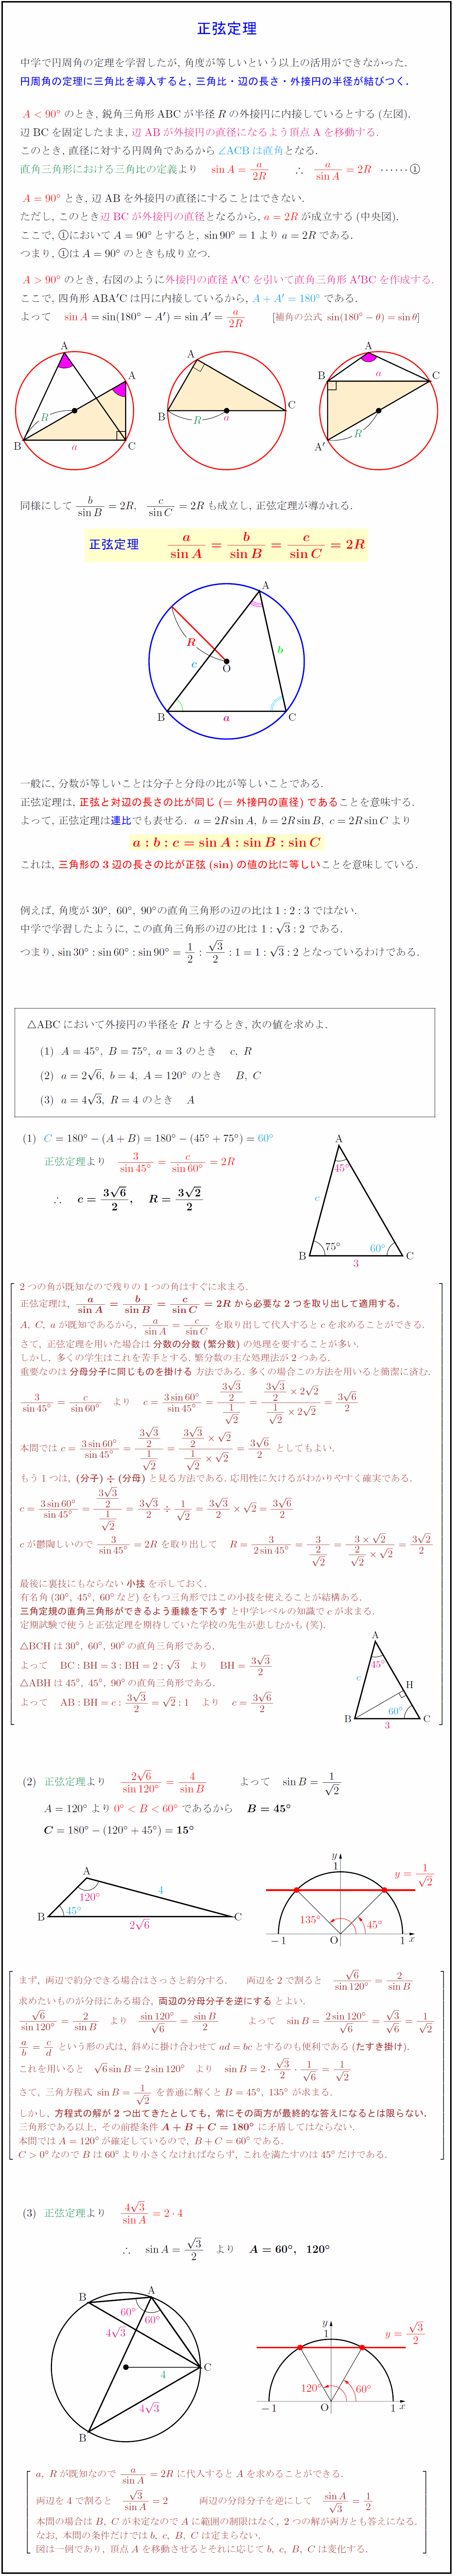 高校数学 正弦定理 円周角の定理と三角比の融合 の証明と利用 受験の月